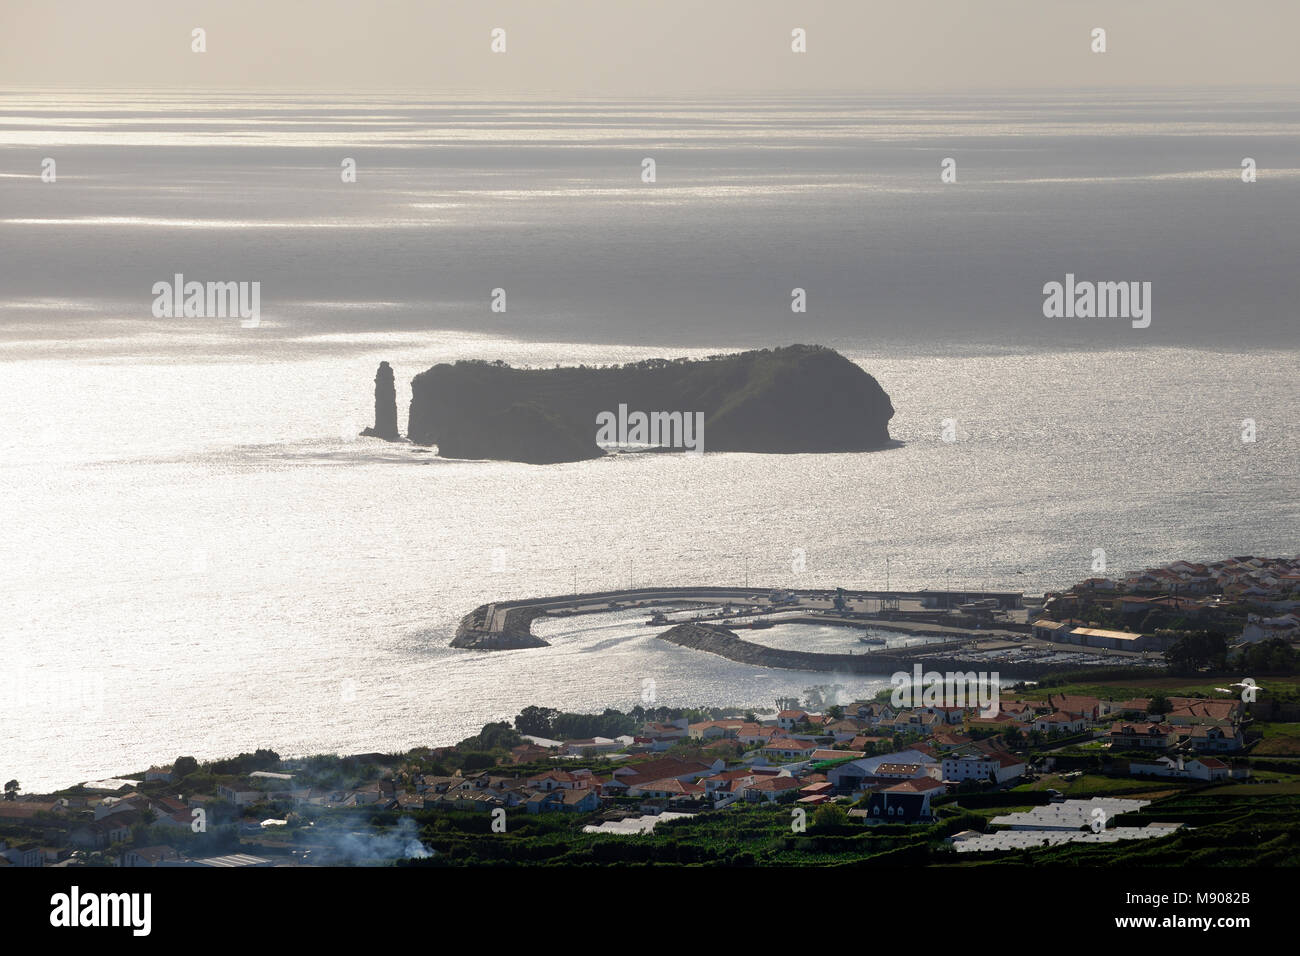 Islet of Vila Franca do Campo. São Miguel, Azores islands. Portugal Stock Photo